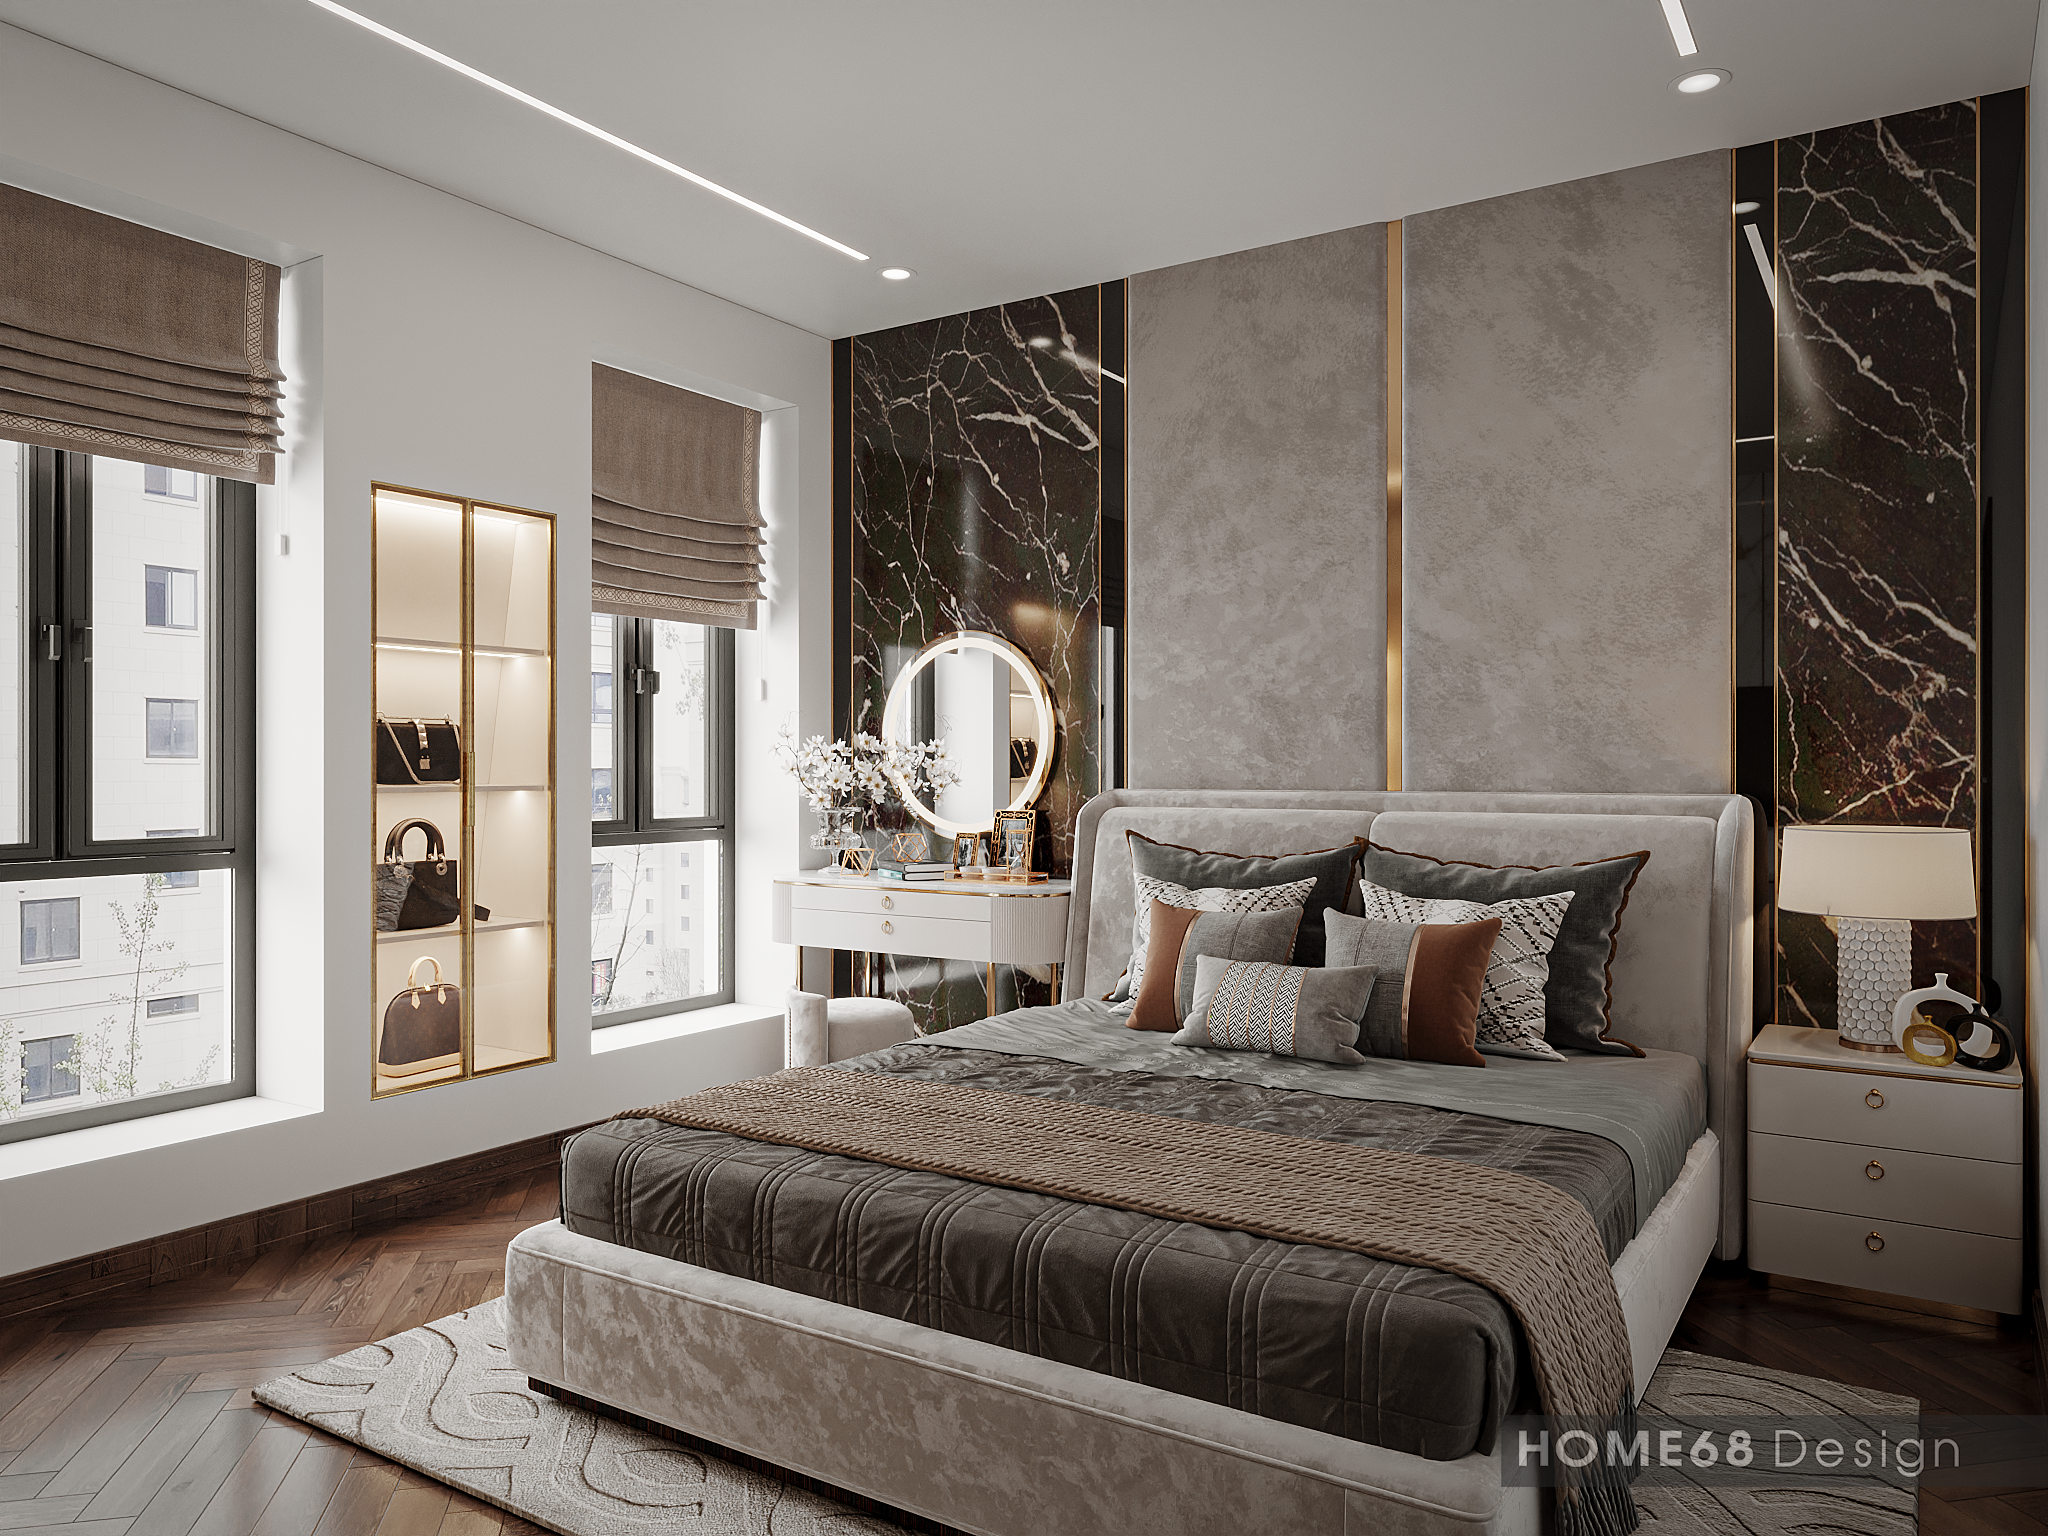 Phòng ngủ chung cư nên được thiết kế nhiều màu sắc nhẹ nhàng, tinh tế với mục đích thư giãn